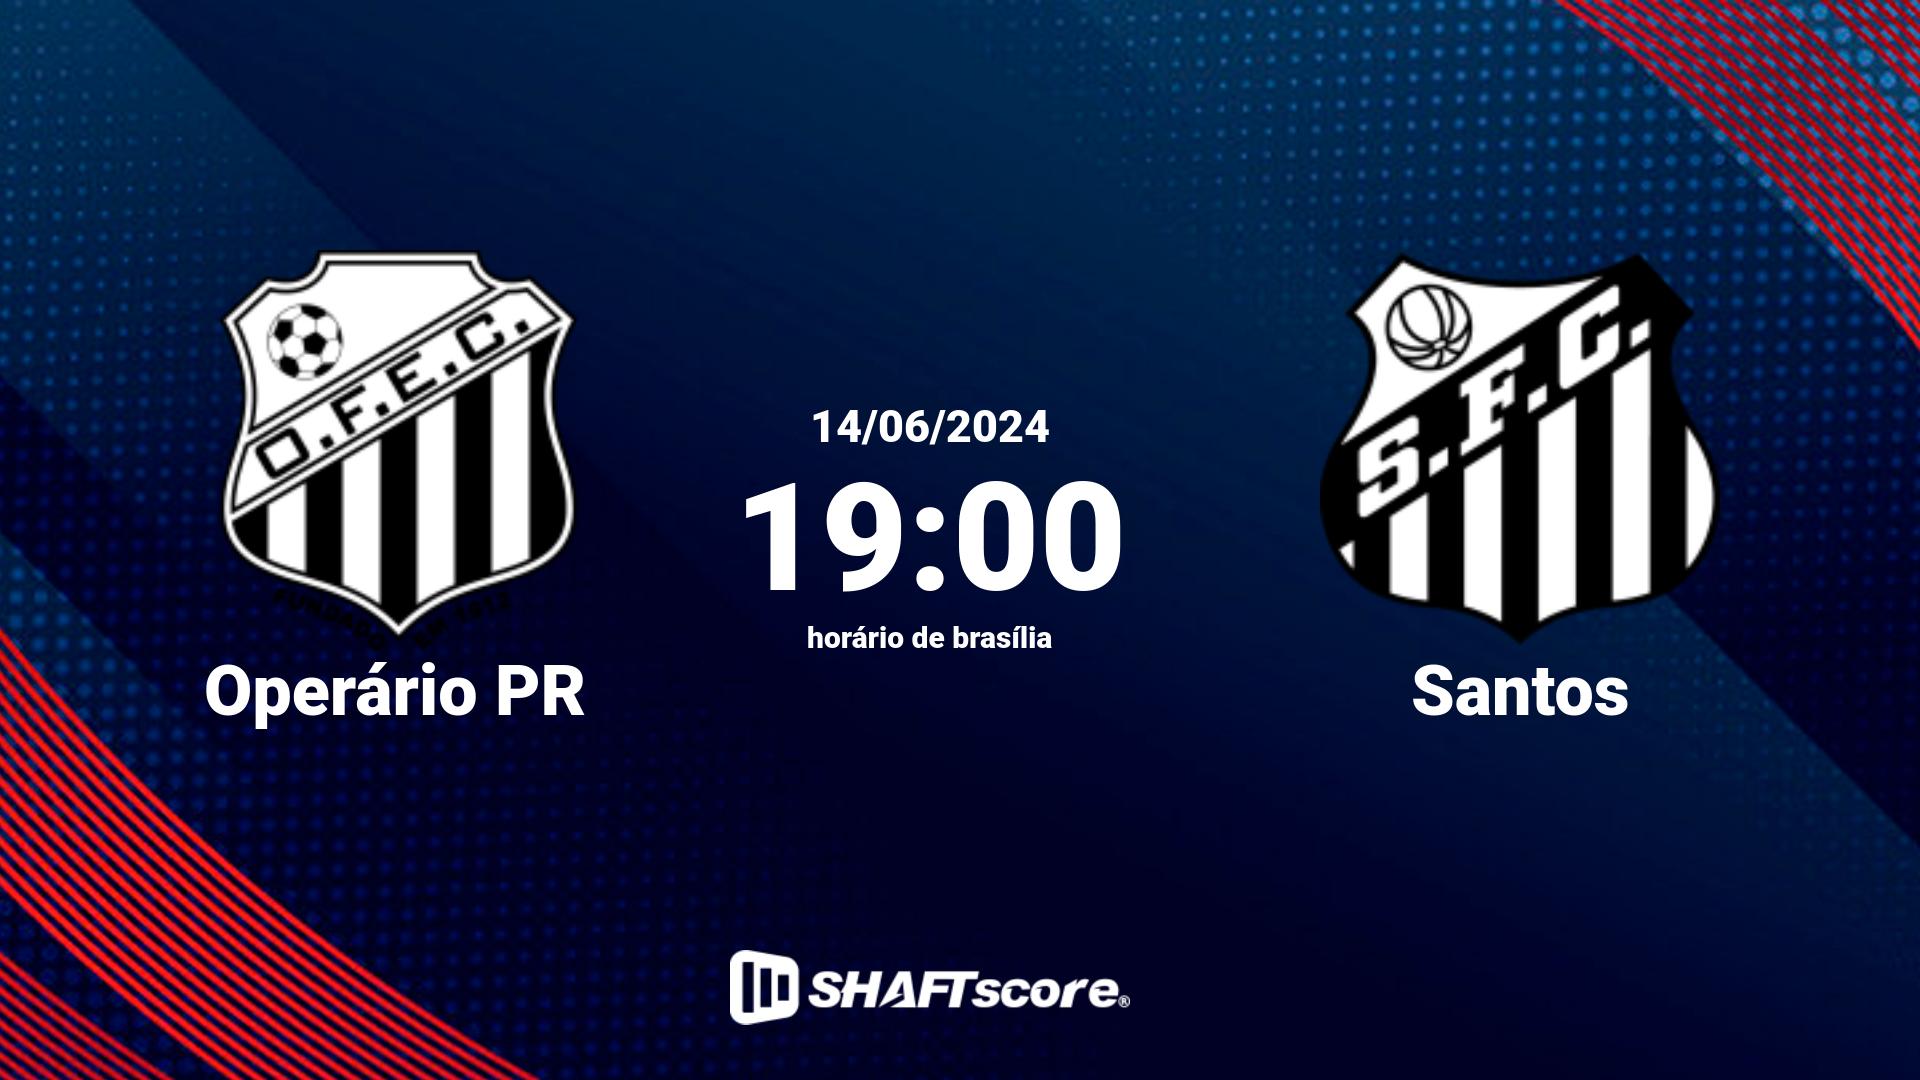 Estatísticas do jogo Operário PR vs Santos 14.06 19:00